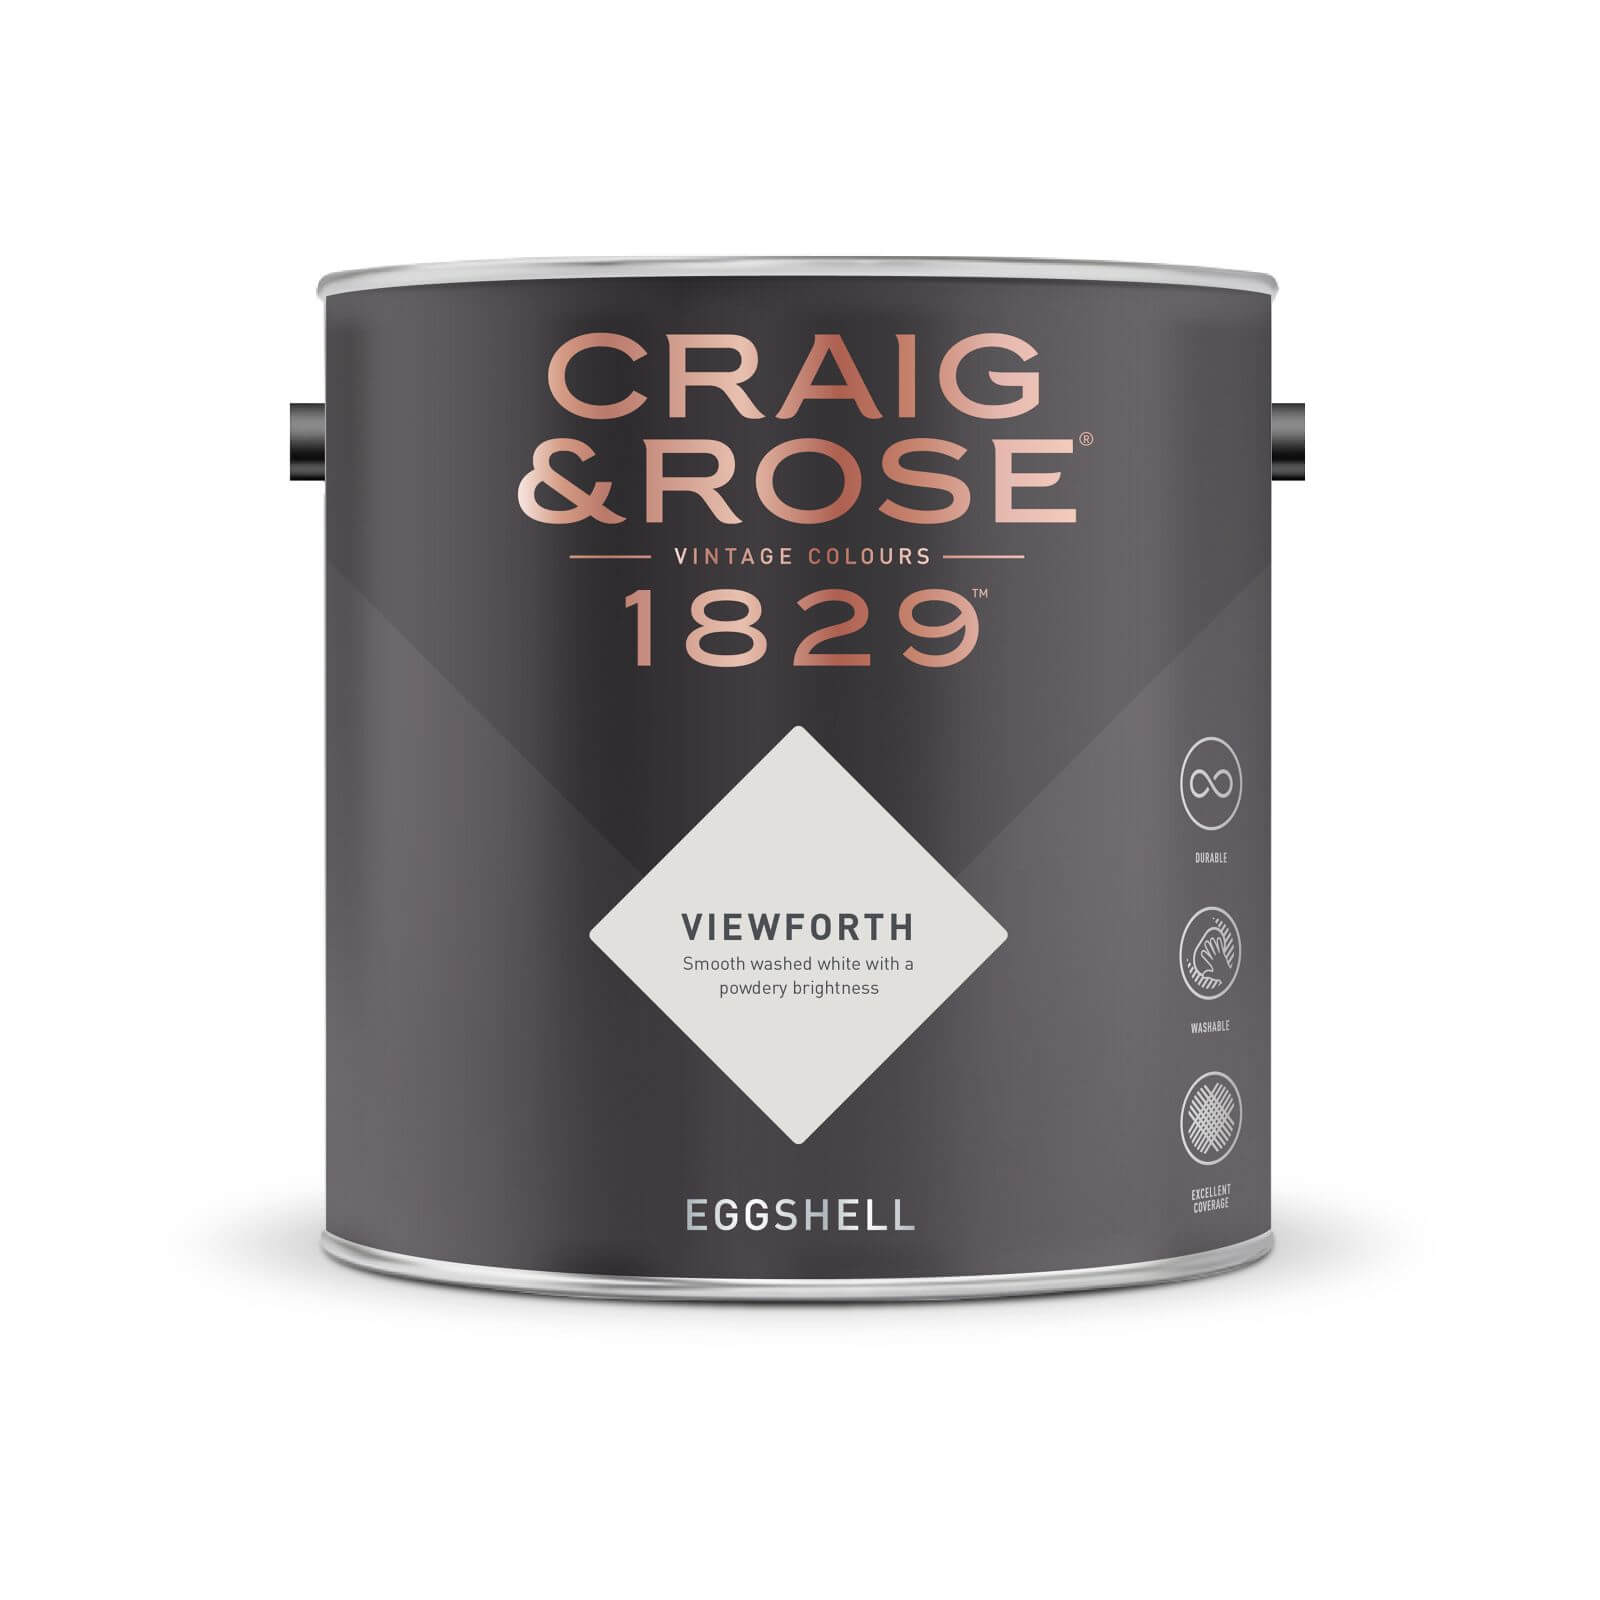 Craig & Rose 1829 Eggshell Paint Viewforth - 2.5L